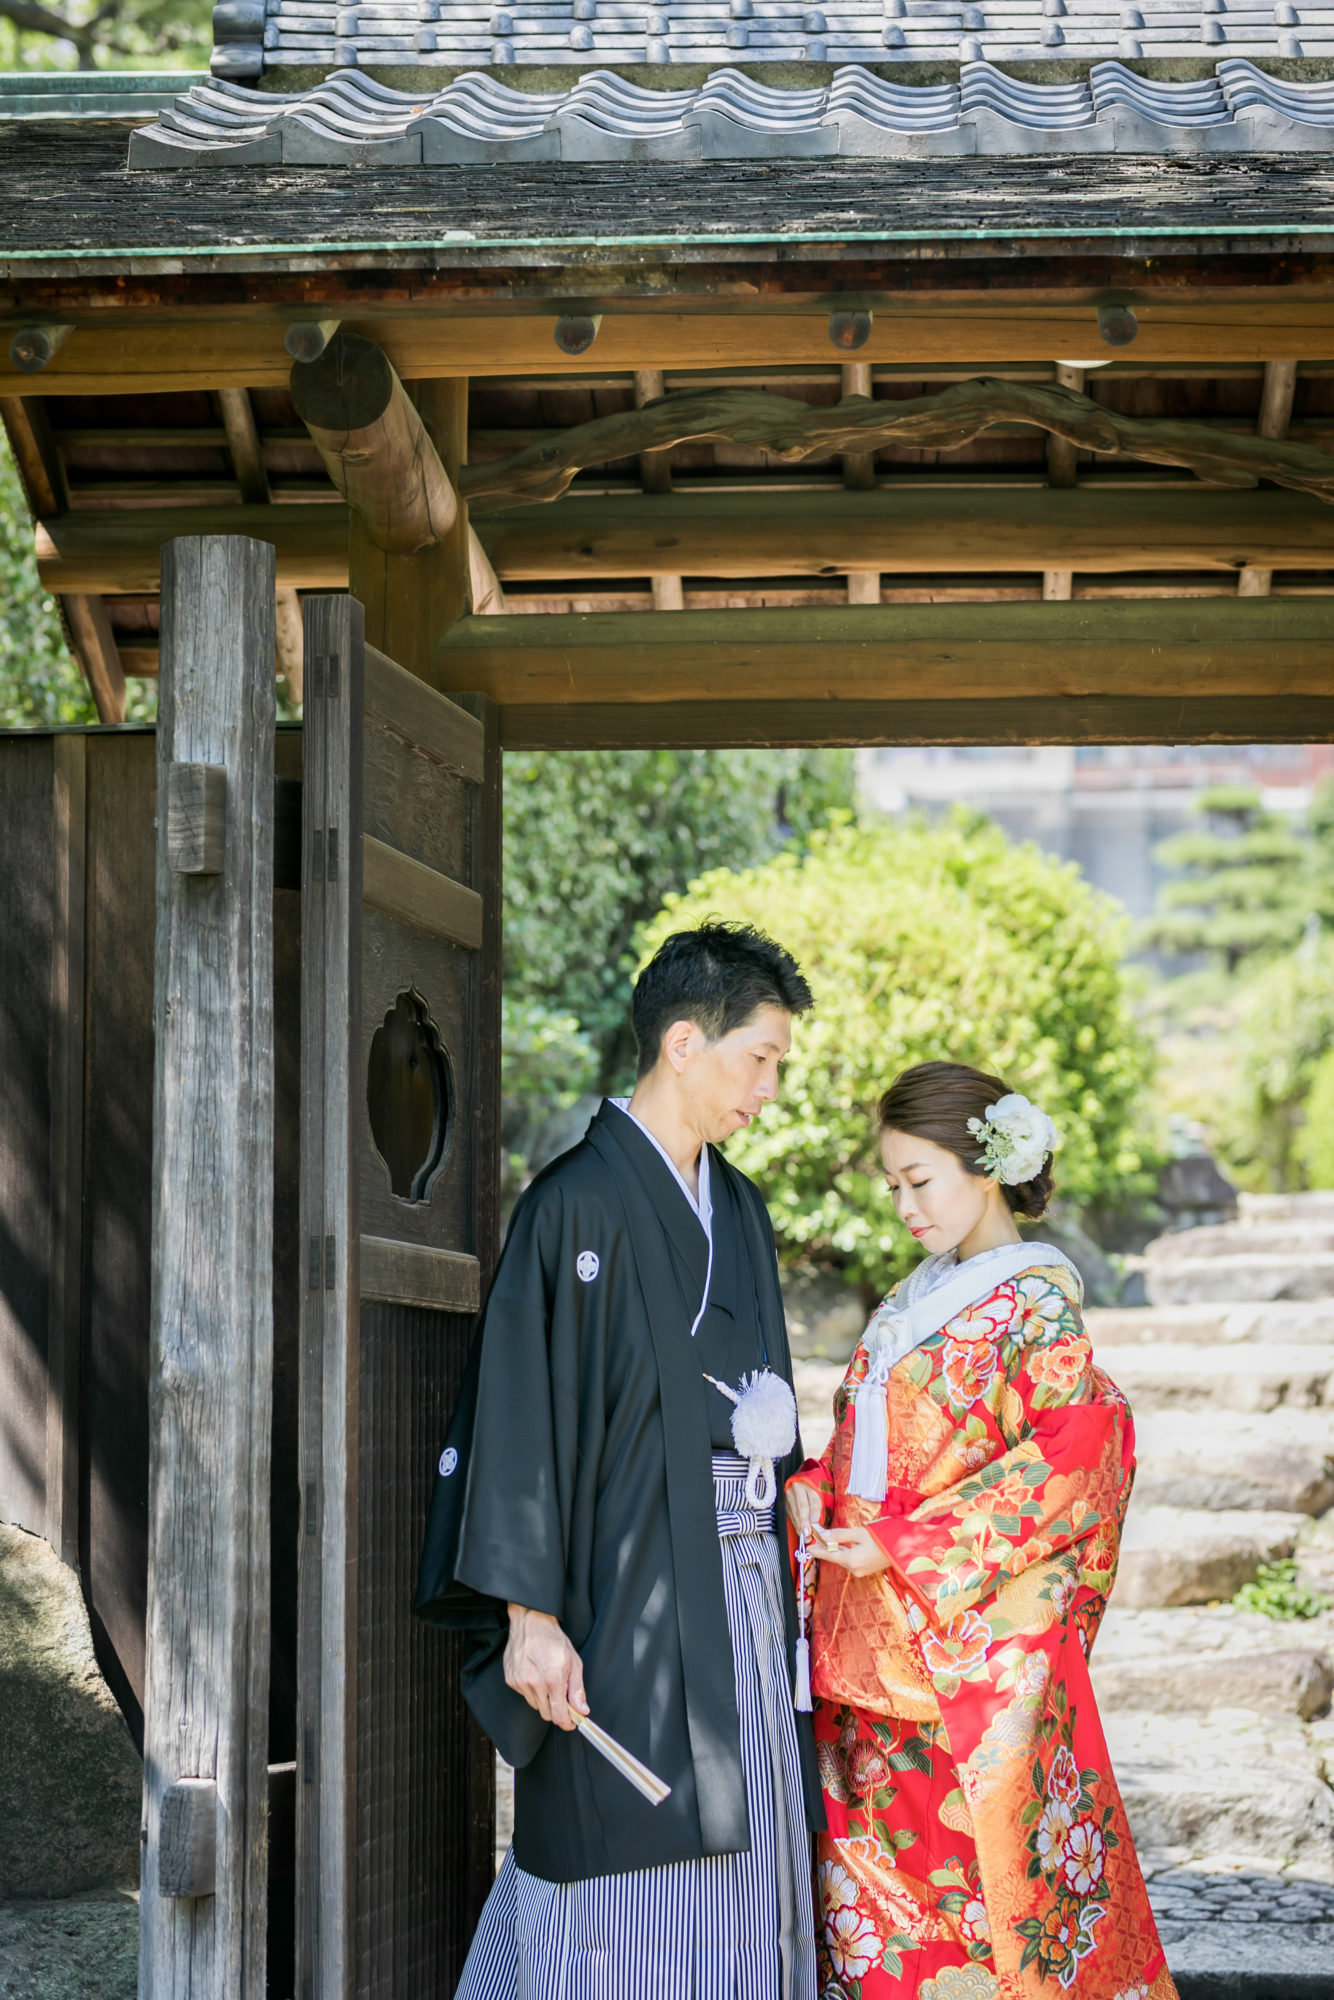 神戸にある日本庭園が広がる相楽園での色打掛をお召しになられた前撮り